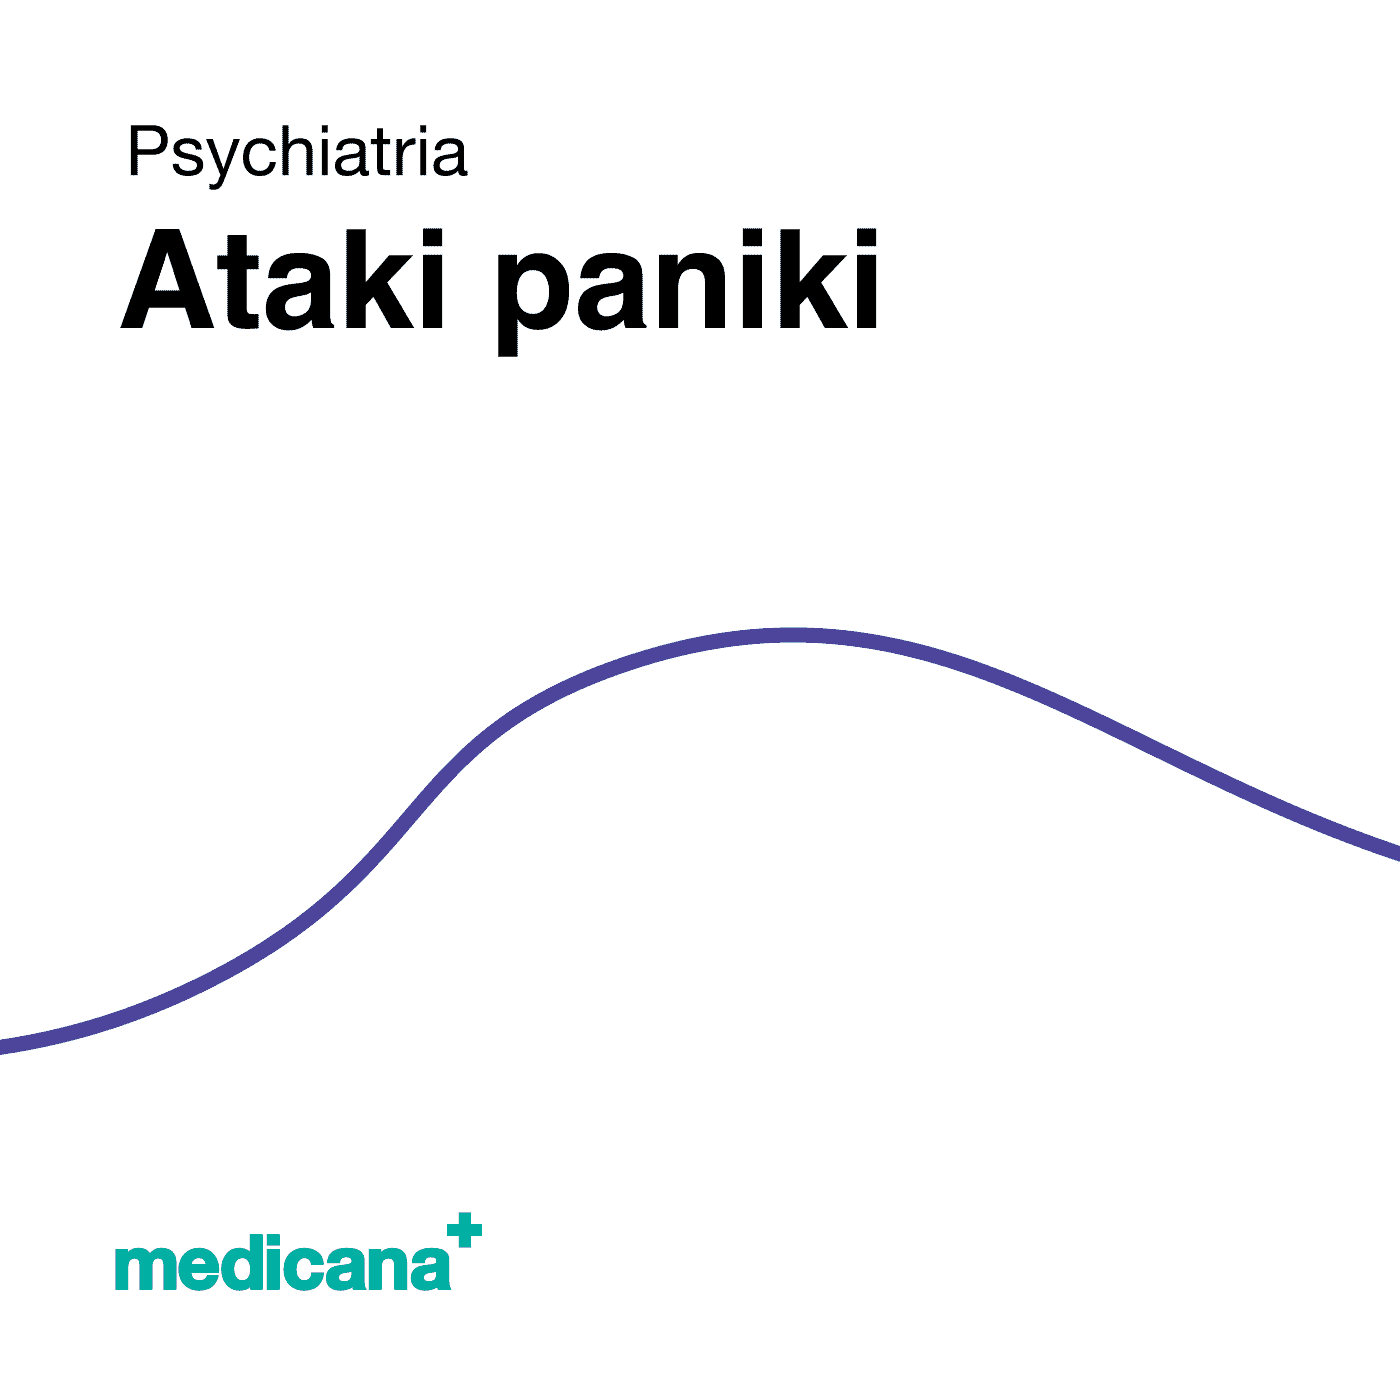 Grafika, białe tło z granatową kreską, czarnym napisem Psychiatria - Ataki paniki i logo Medicana Centrum Terapii Medyczna Marihuana w lewym dolnym rogu.